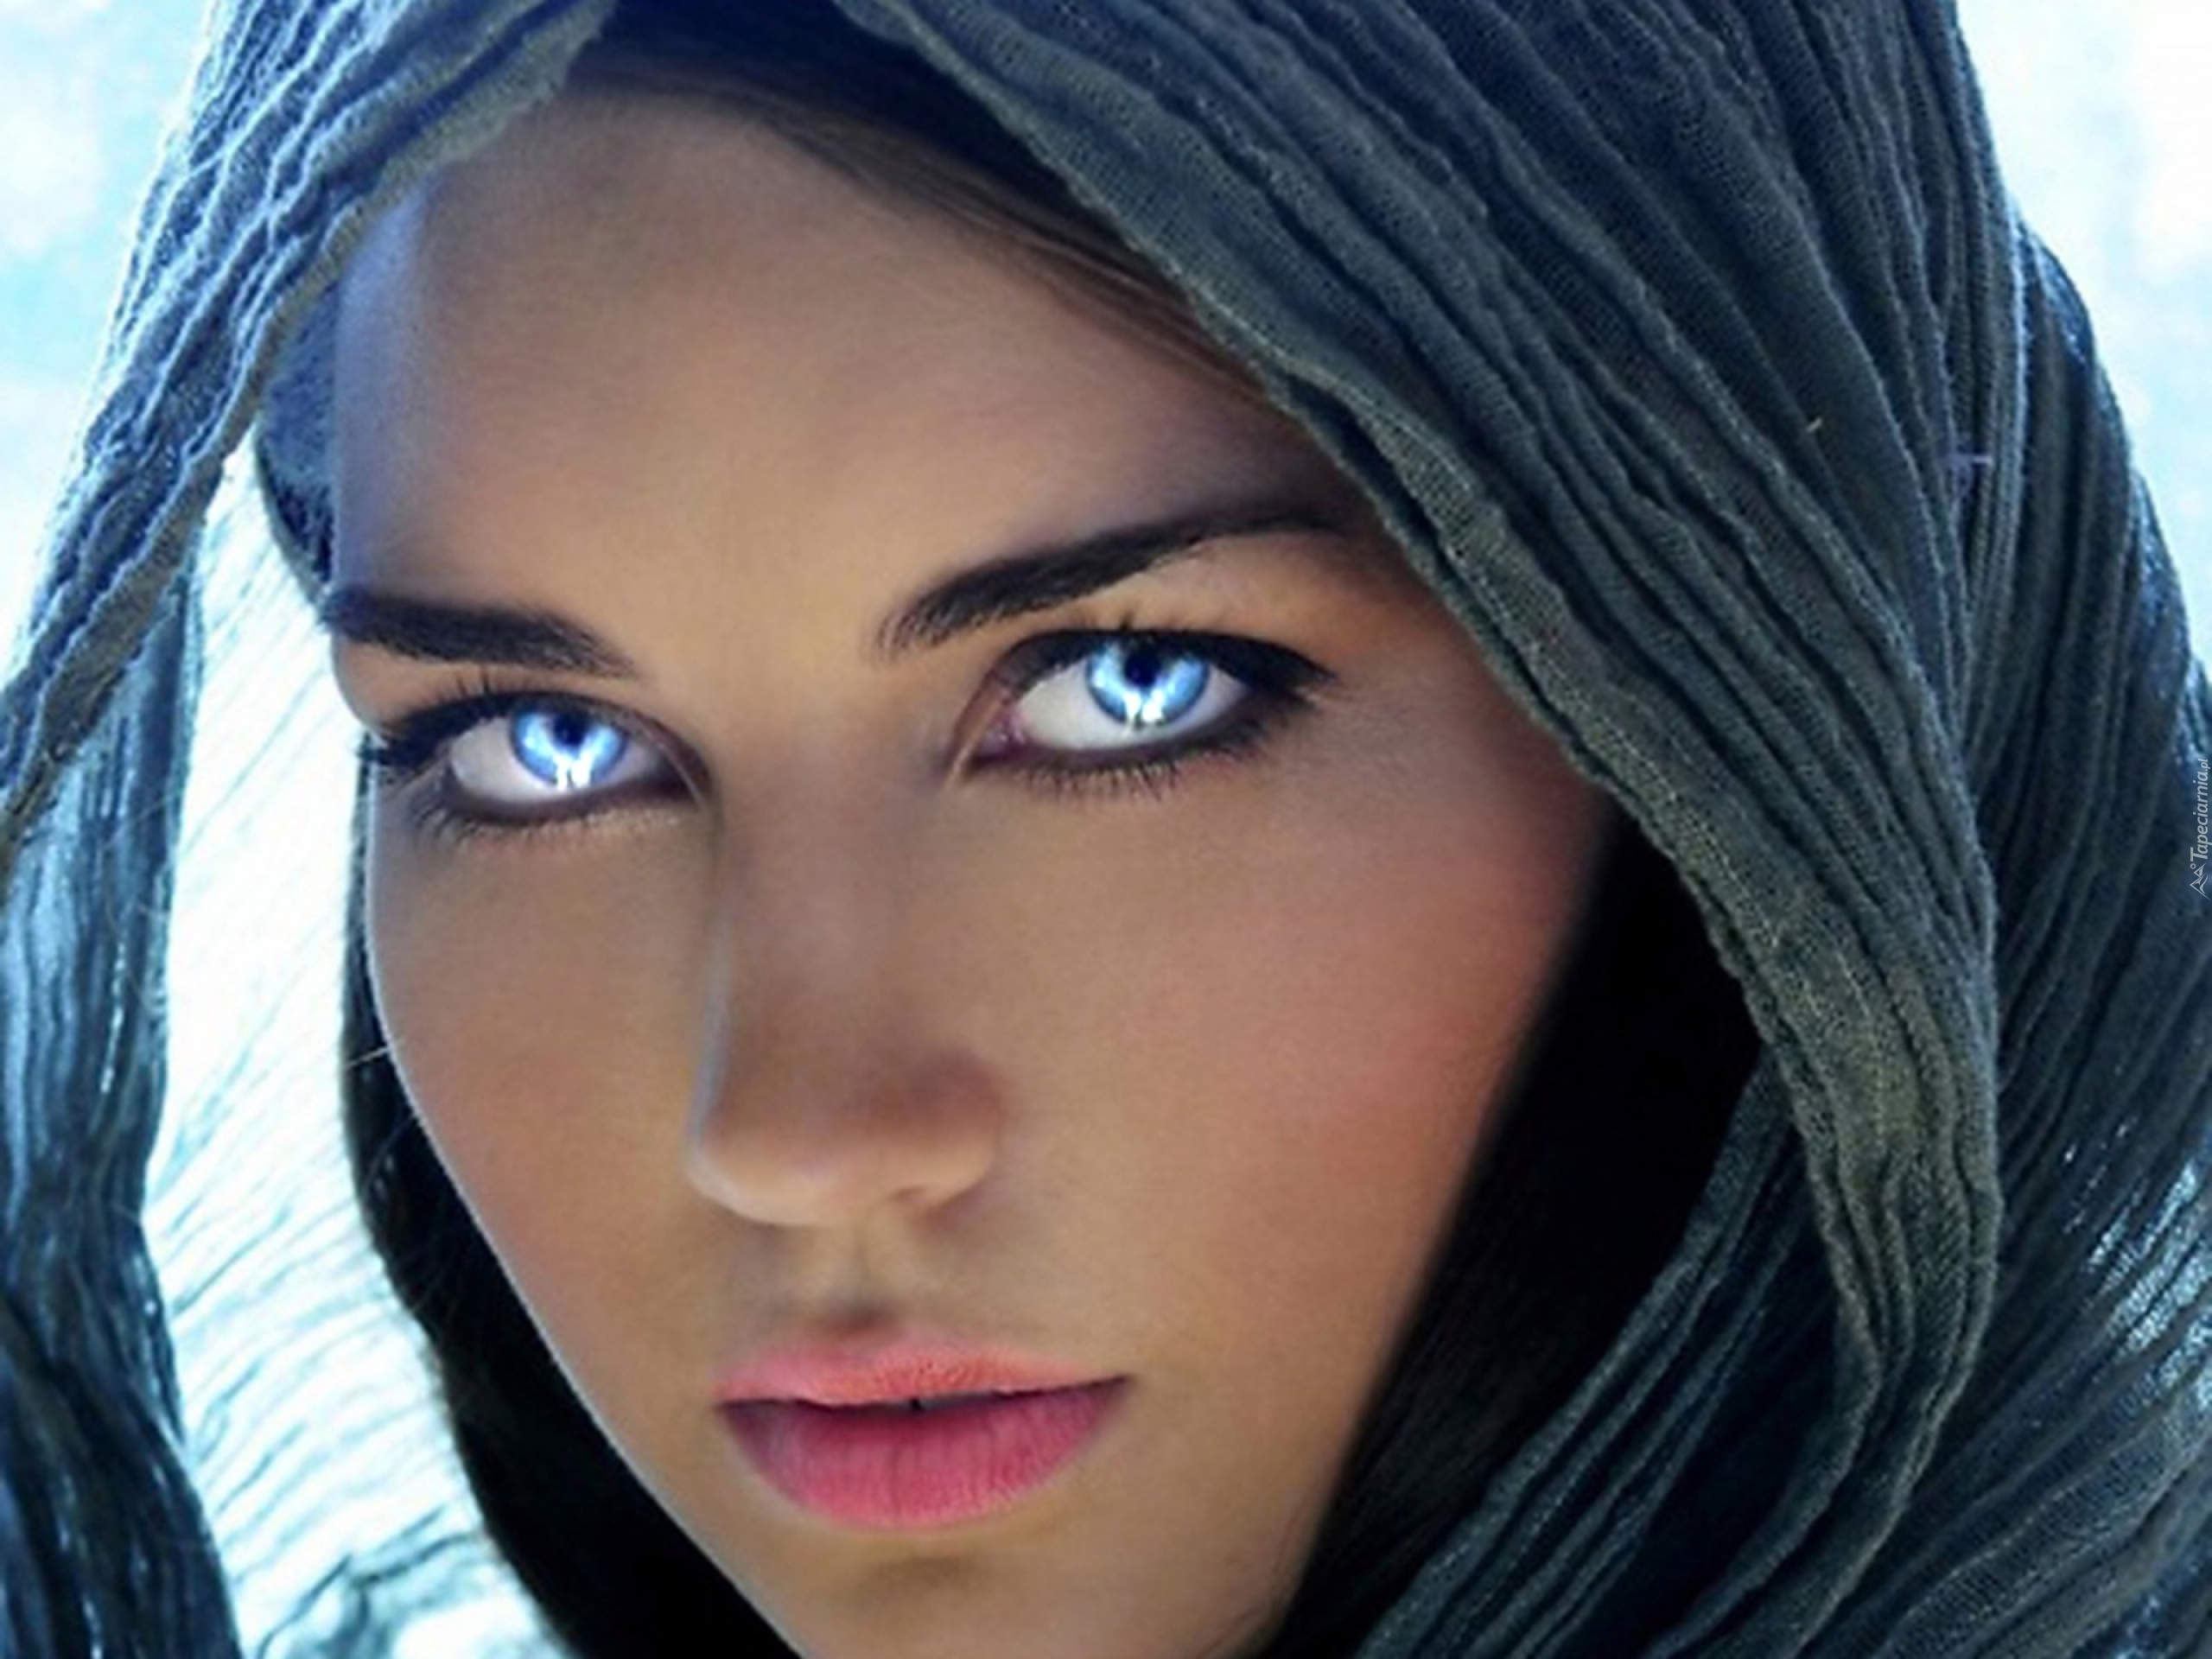 Голубые глаза прекрасны. Девушка с синими глазами. Красивые глаза. Девушки с необычными глазами. Красивые глаза девушки.